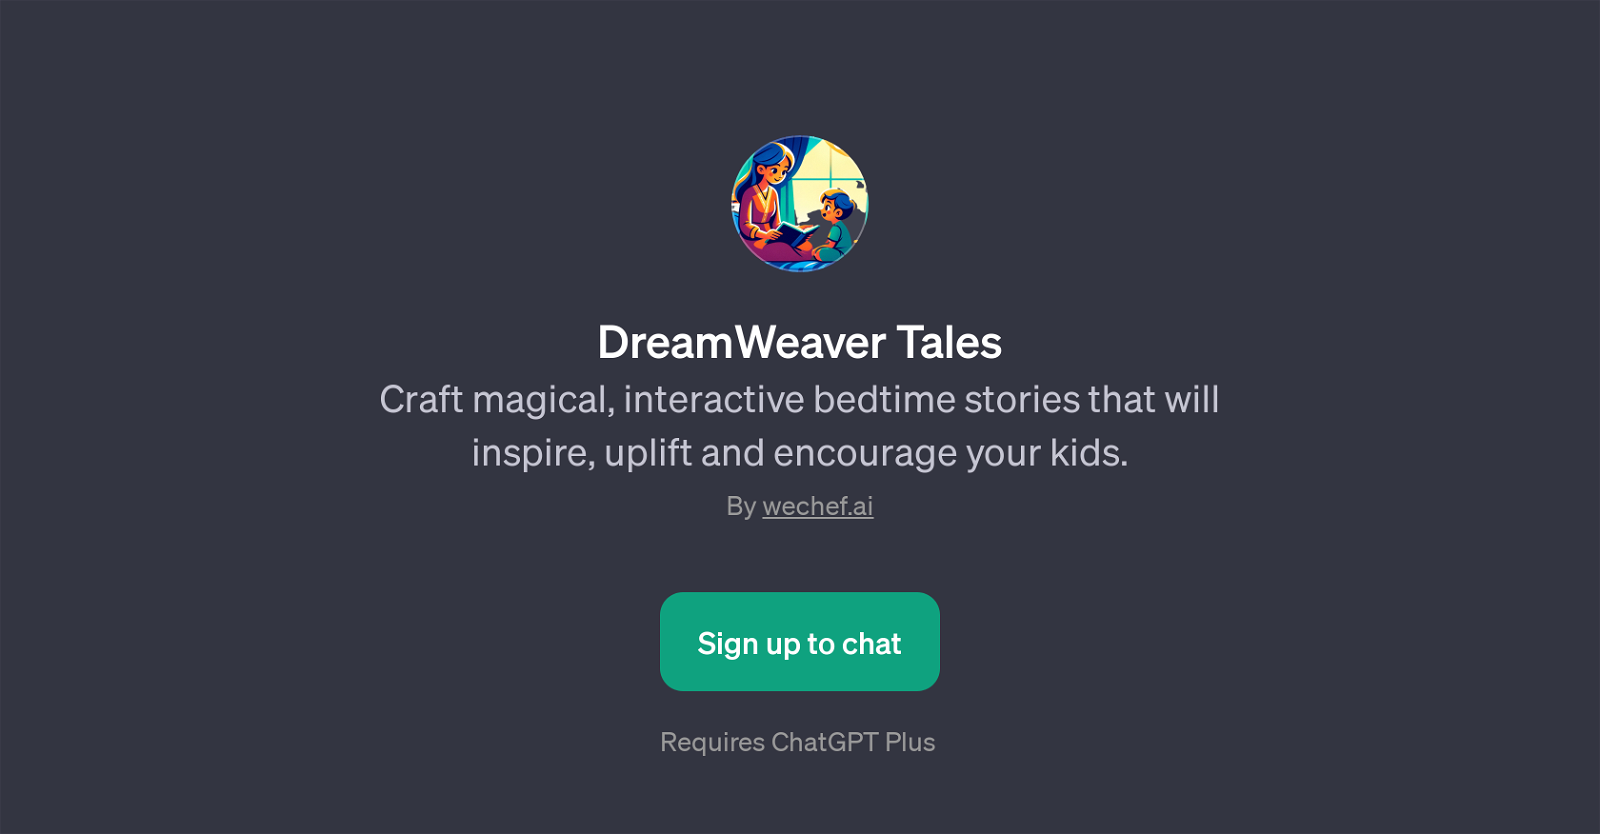 DreamWeaver Tales website